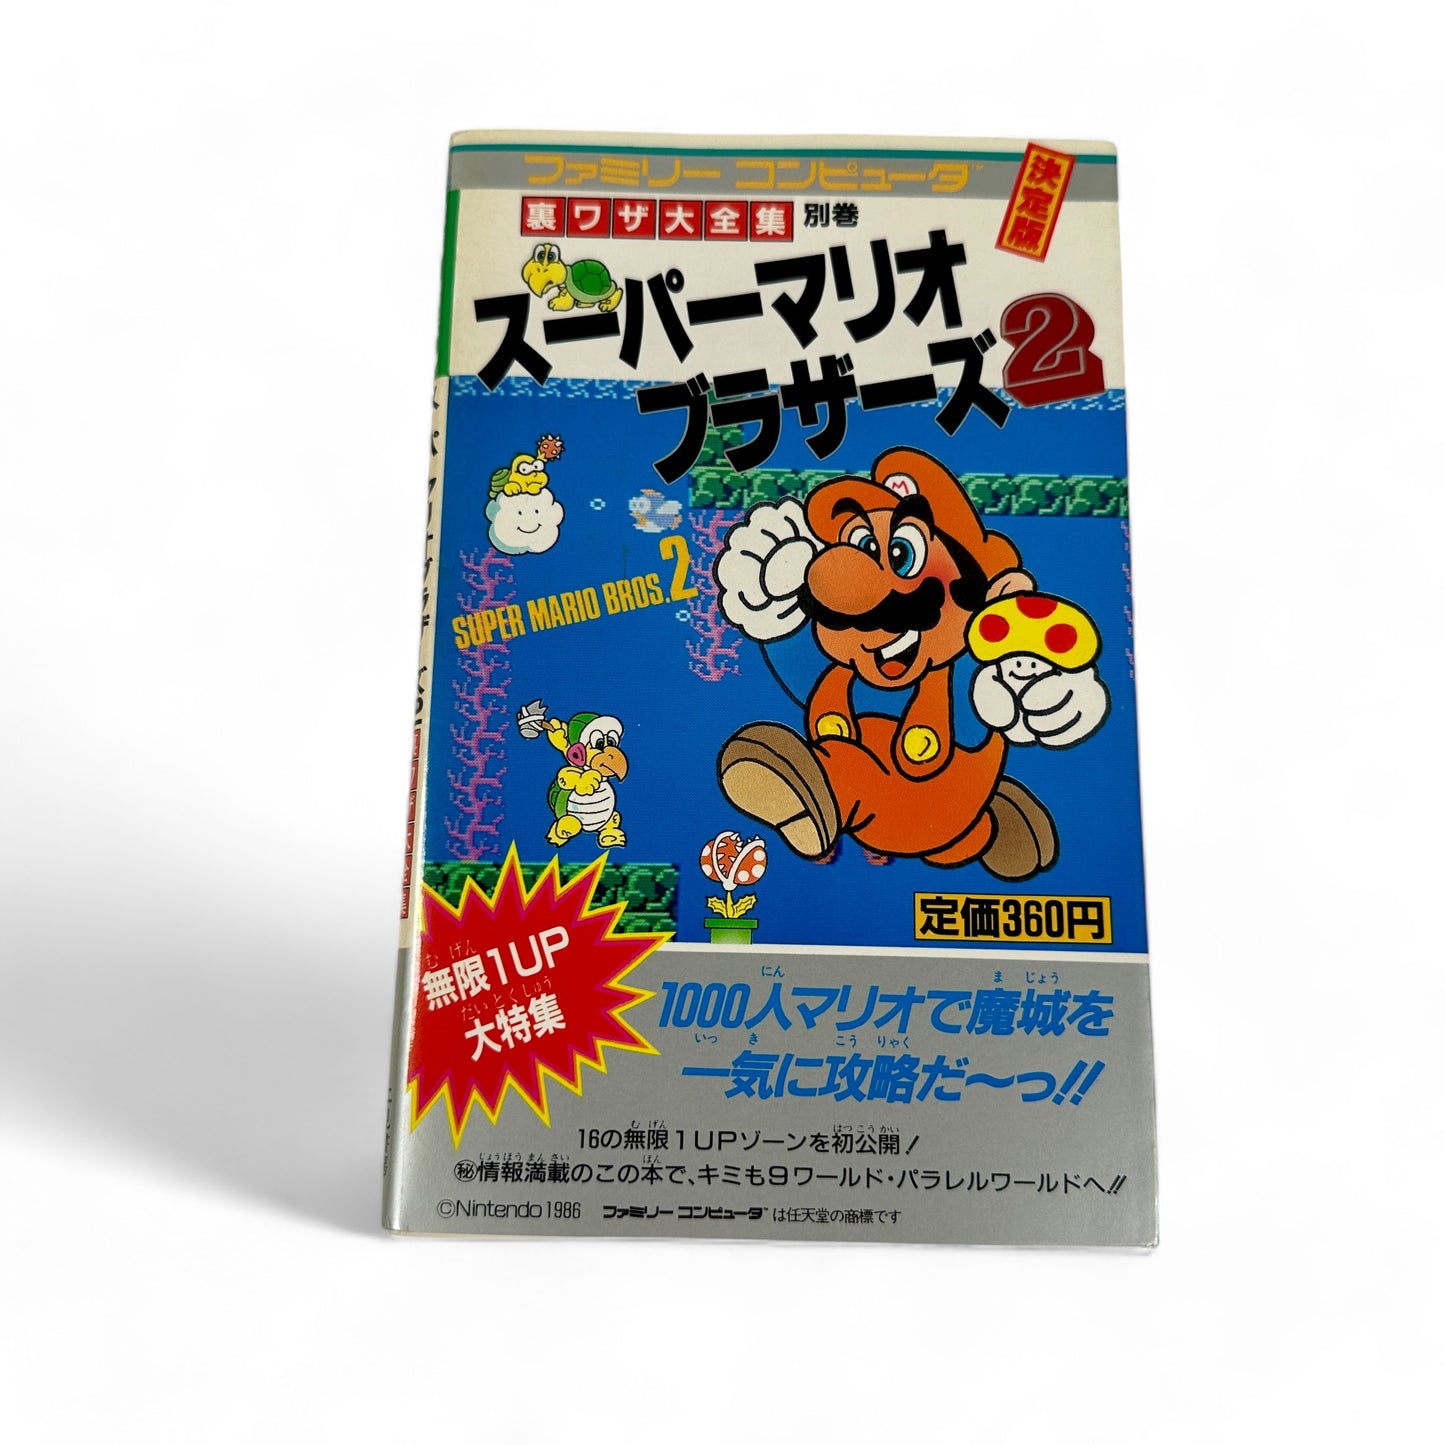 Guide de Super Mario Bros. 2